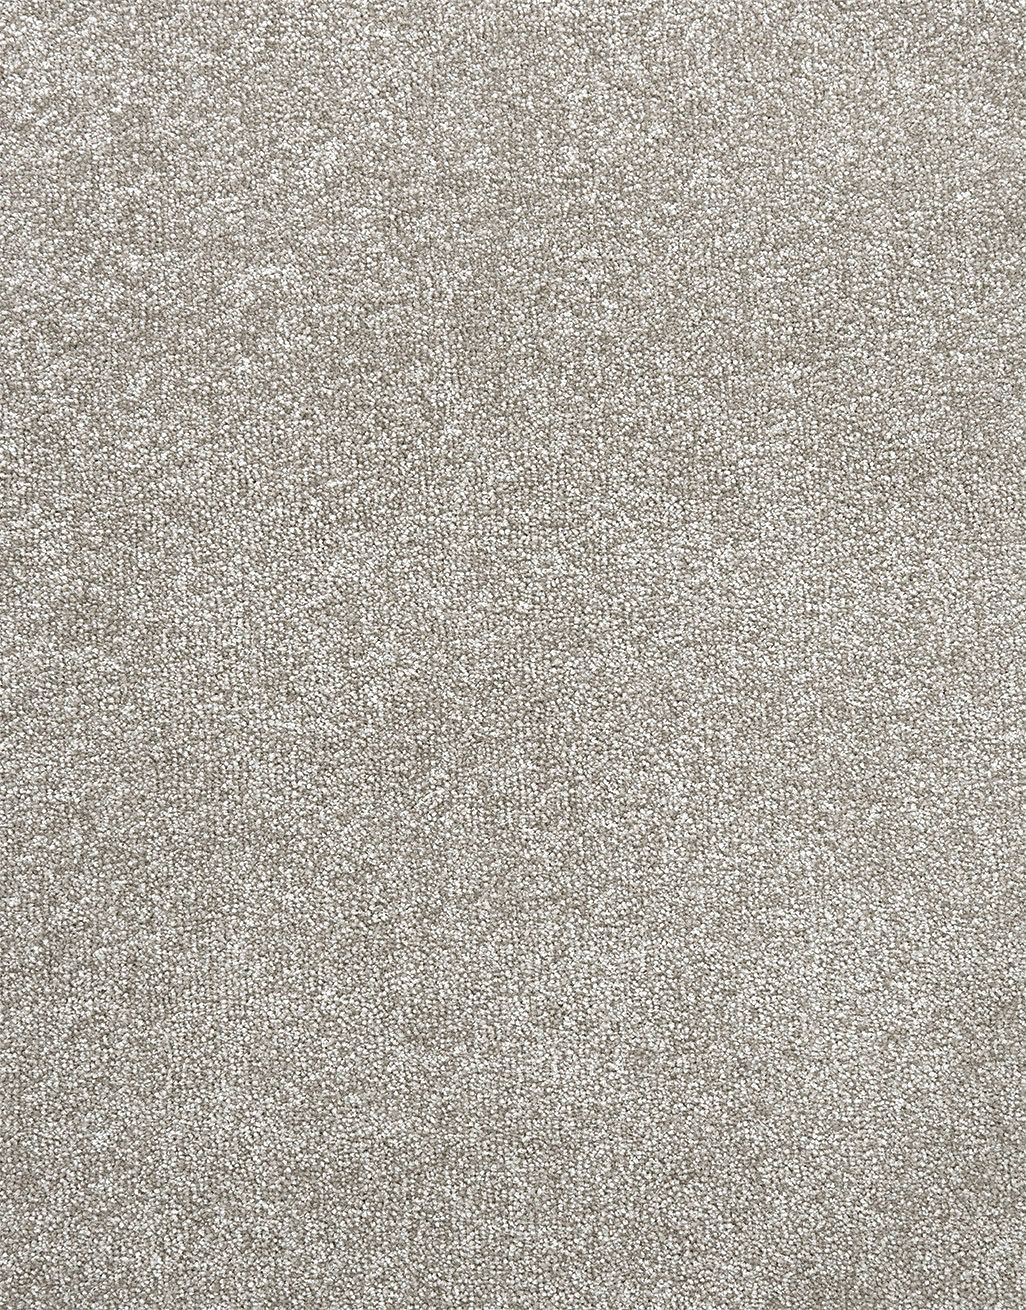 Corfu - Misty Grey [8.50m x 5m] 2